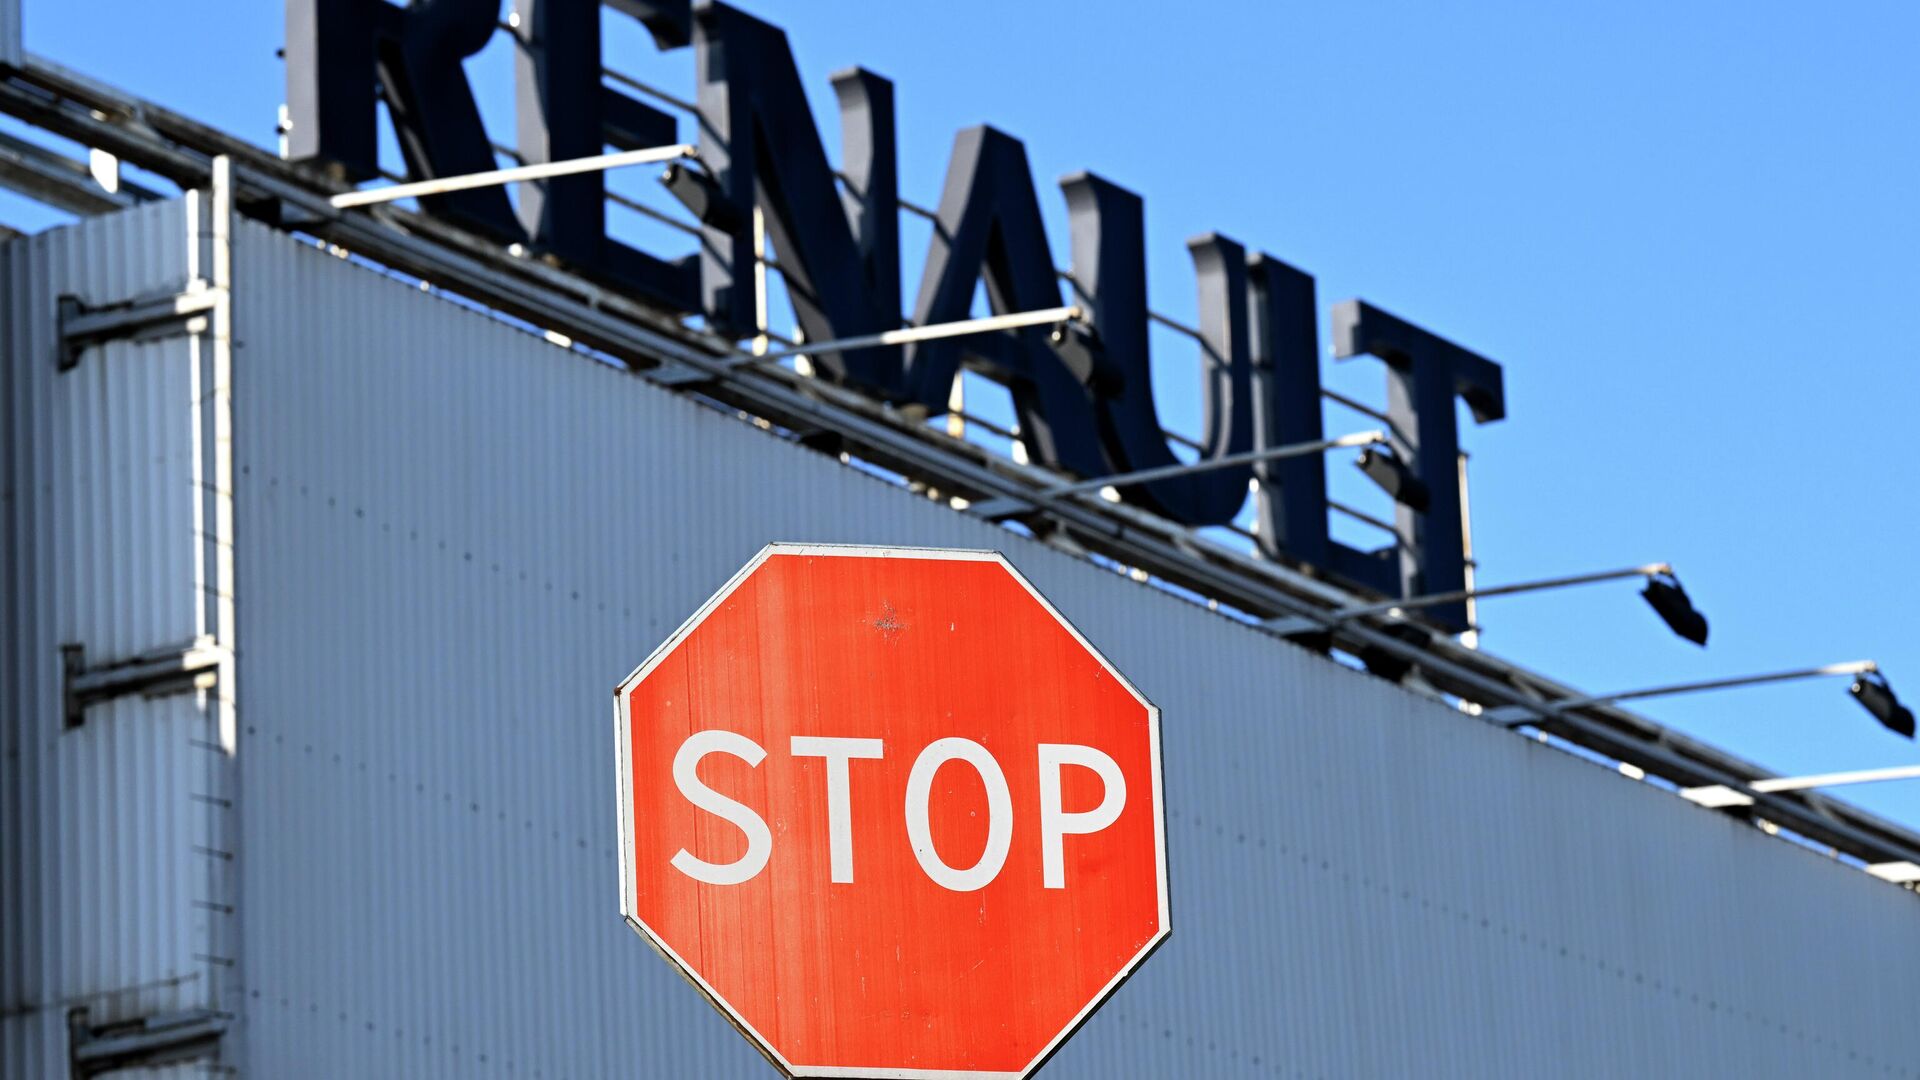 Вывеска автомобильной компании Renault на территории завода ЗАО Рено Россия в Москве - Sputnik Беларусь, 1920, 06.06.2022